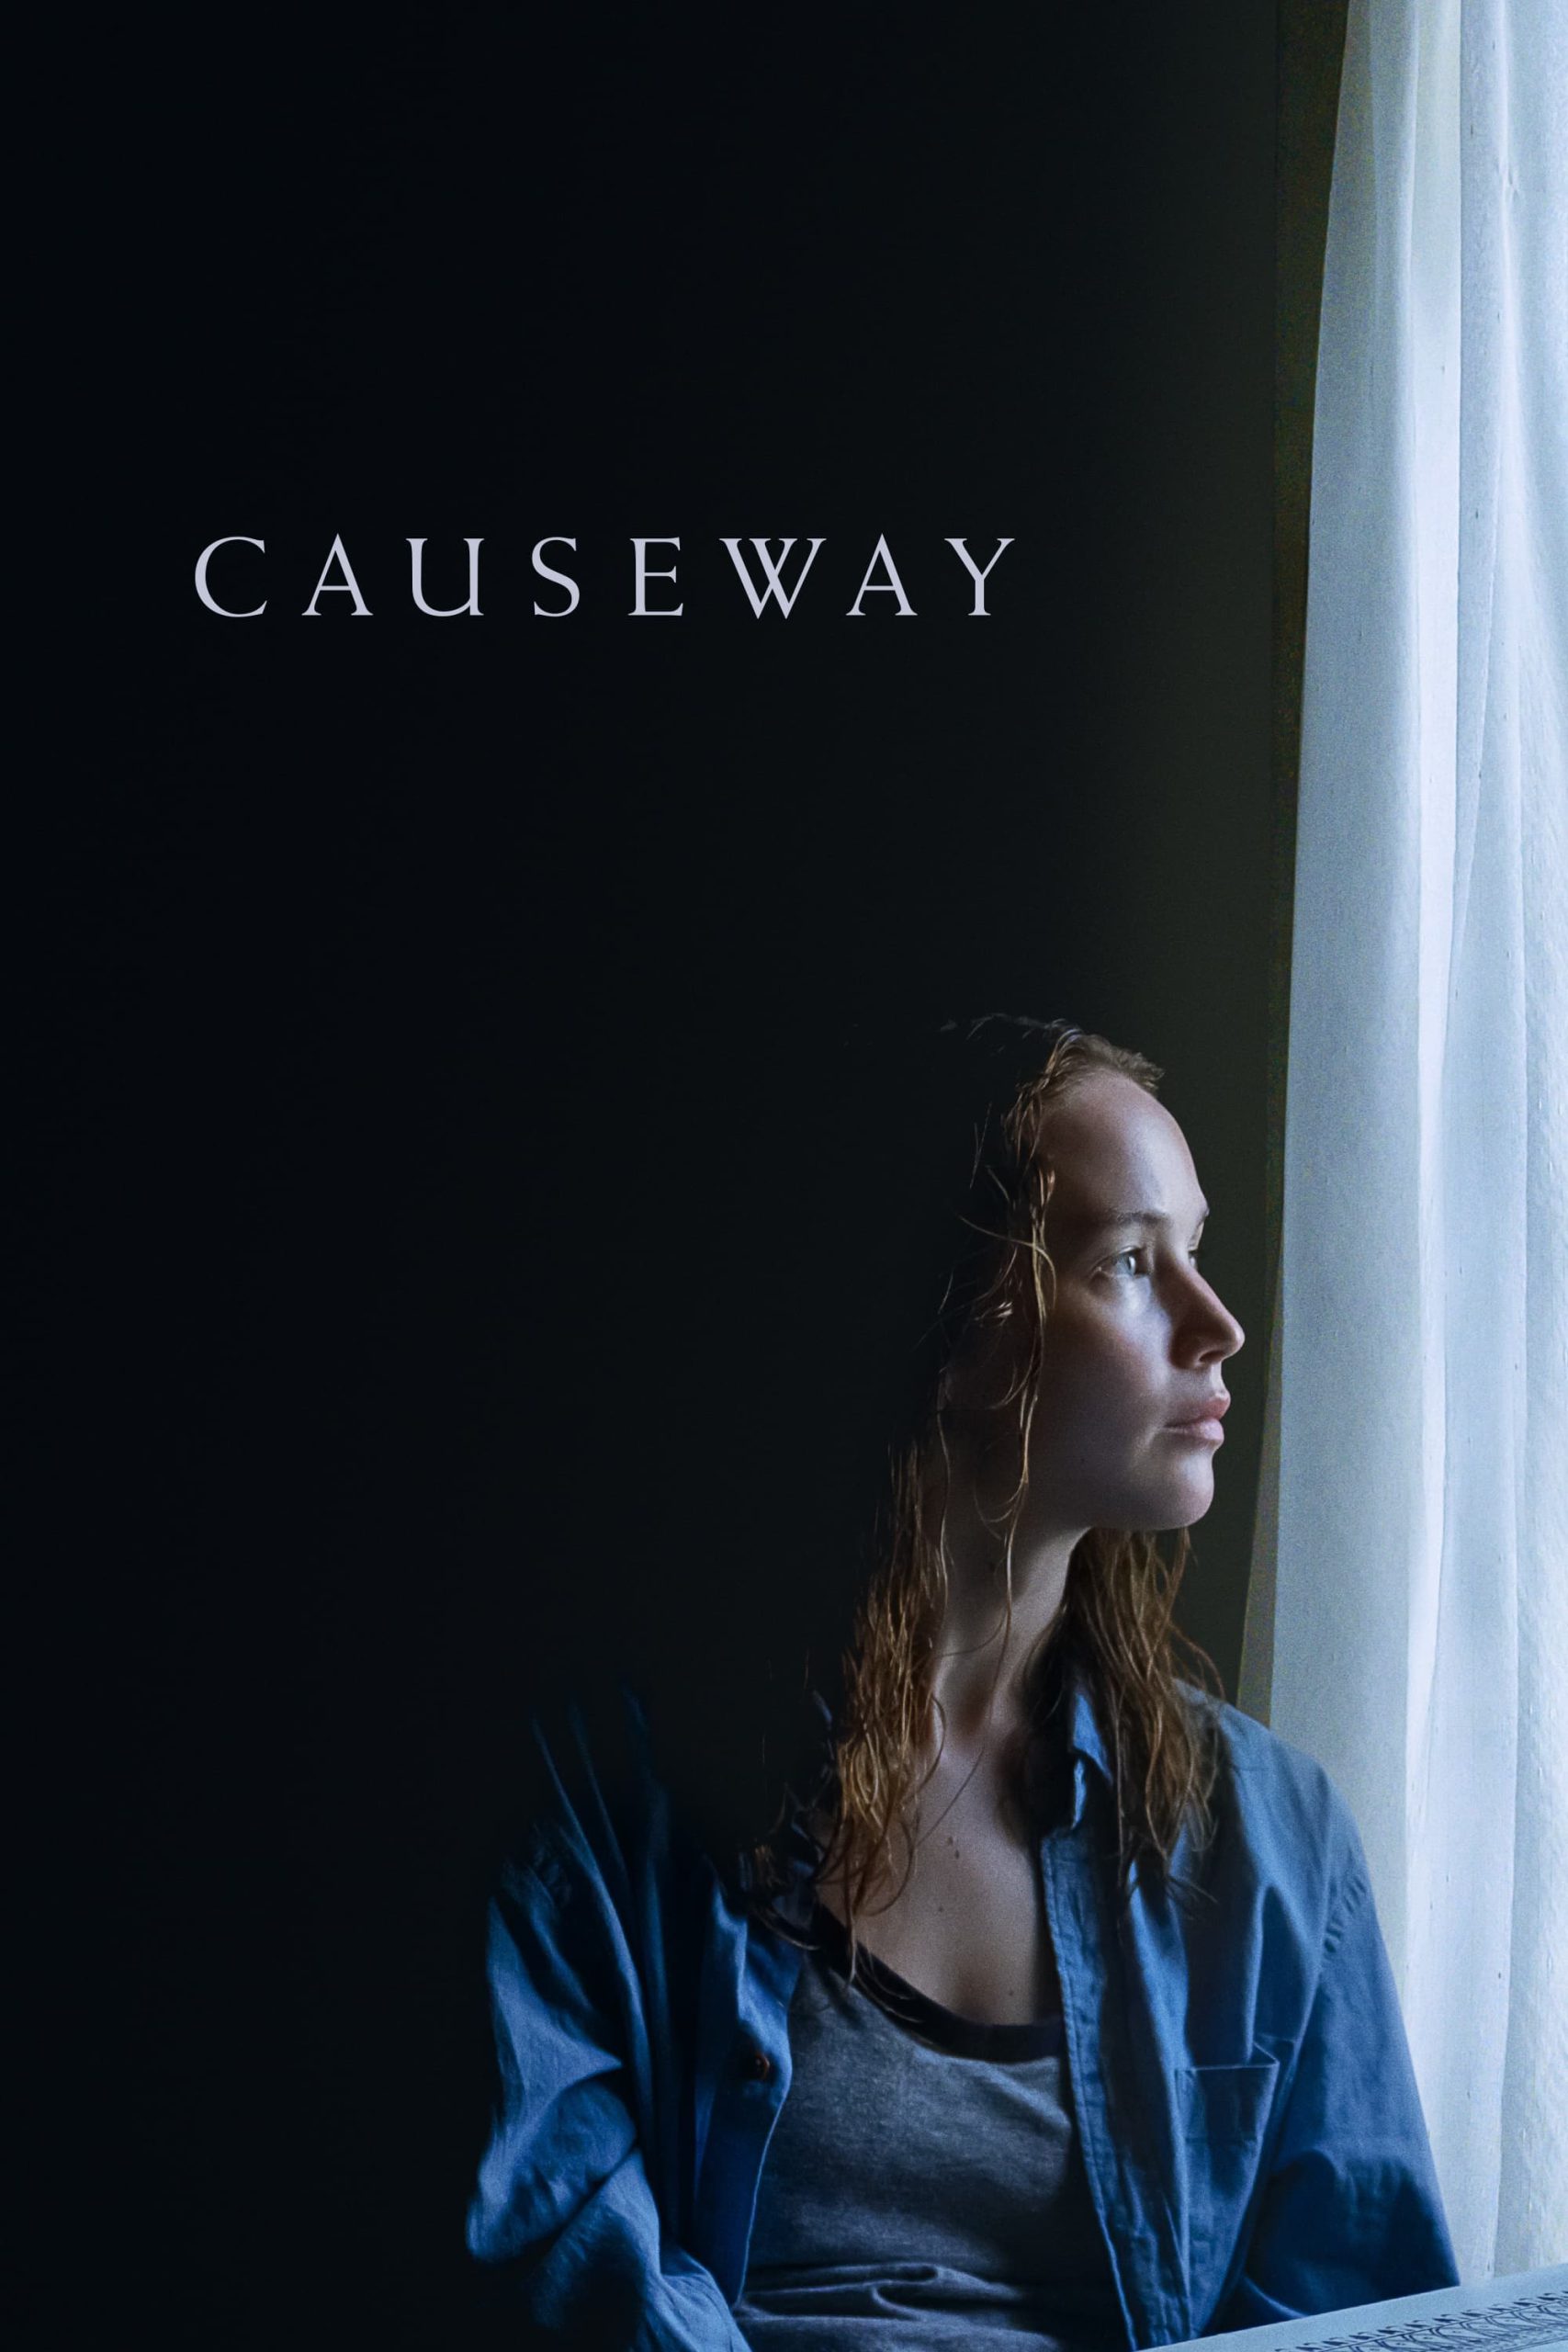 Causeway [HD] (2022)